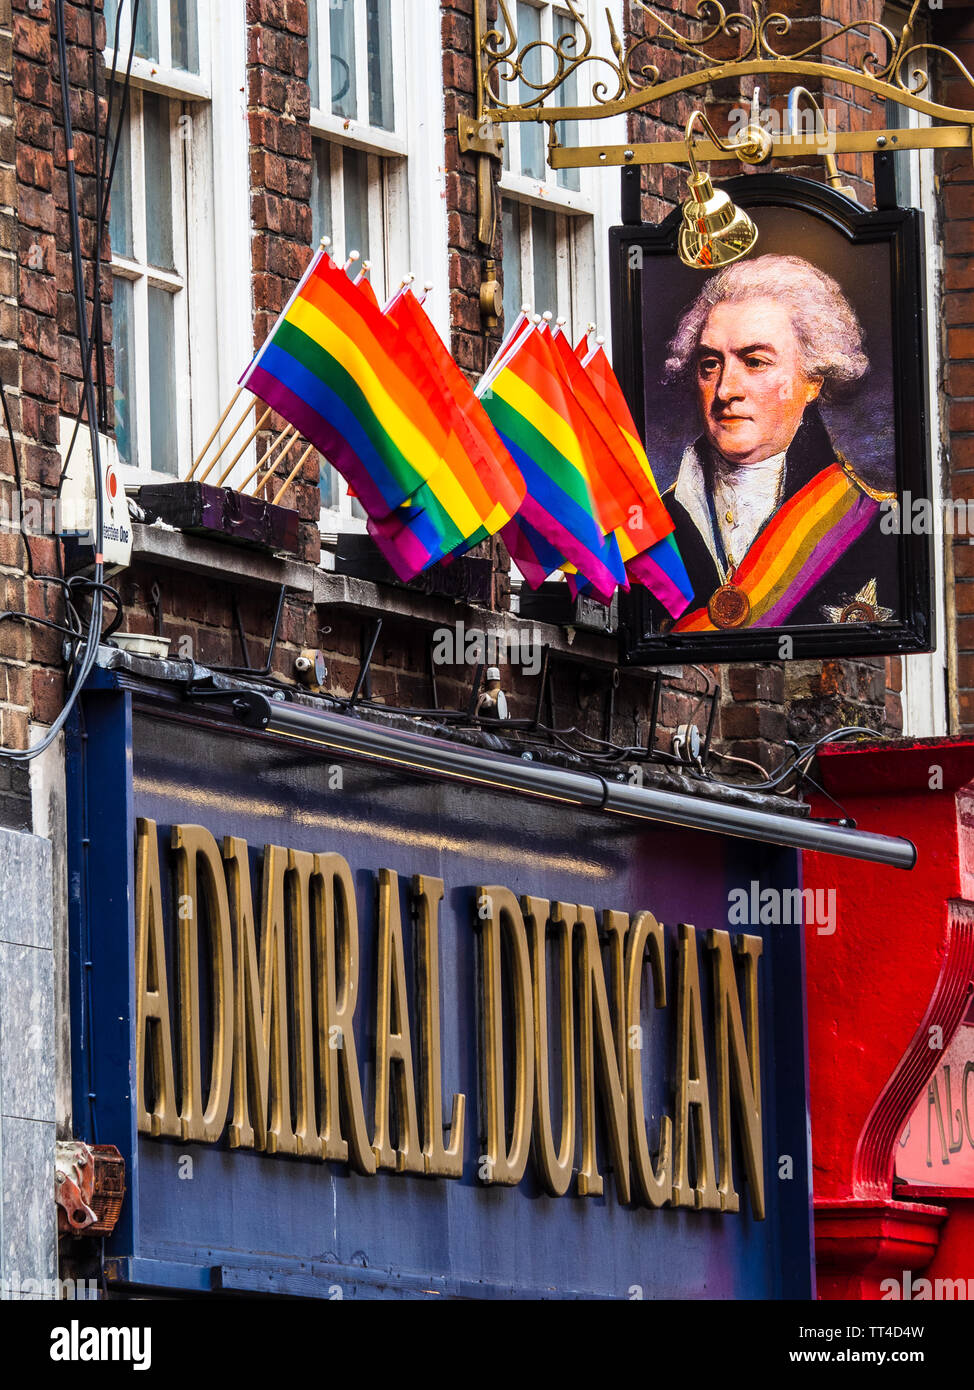 Admiral Duncan Pub Soho Londres - bien connu comme l'un des plus anciens pubs de Soho gay il a fait l'objet d'une attaque à la bombe à clou homophobes 1999. Banque D'Images